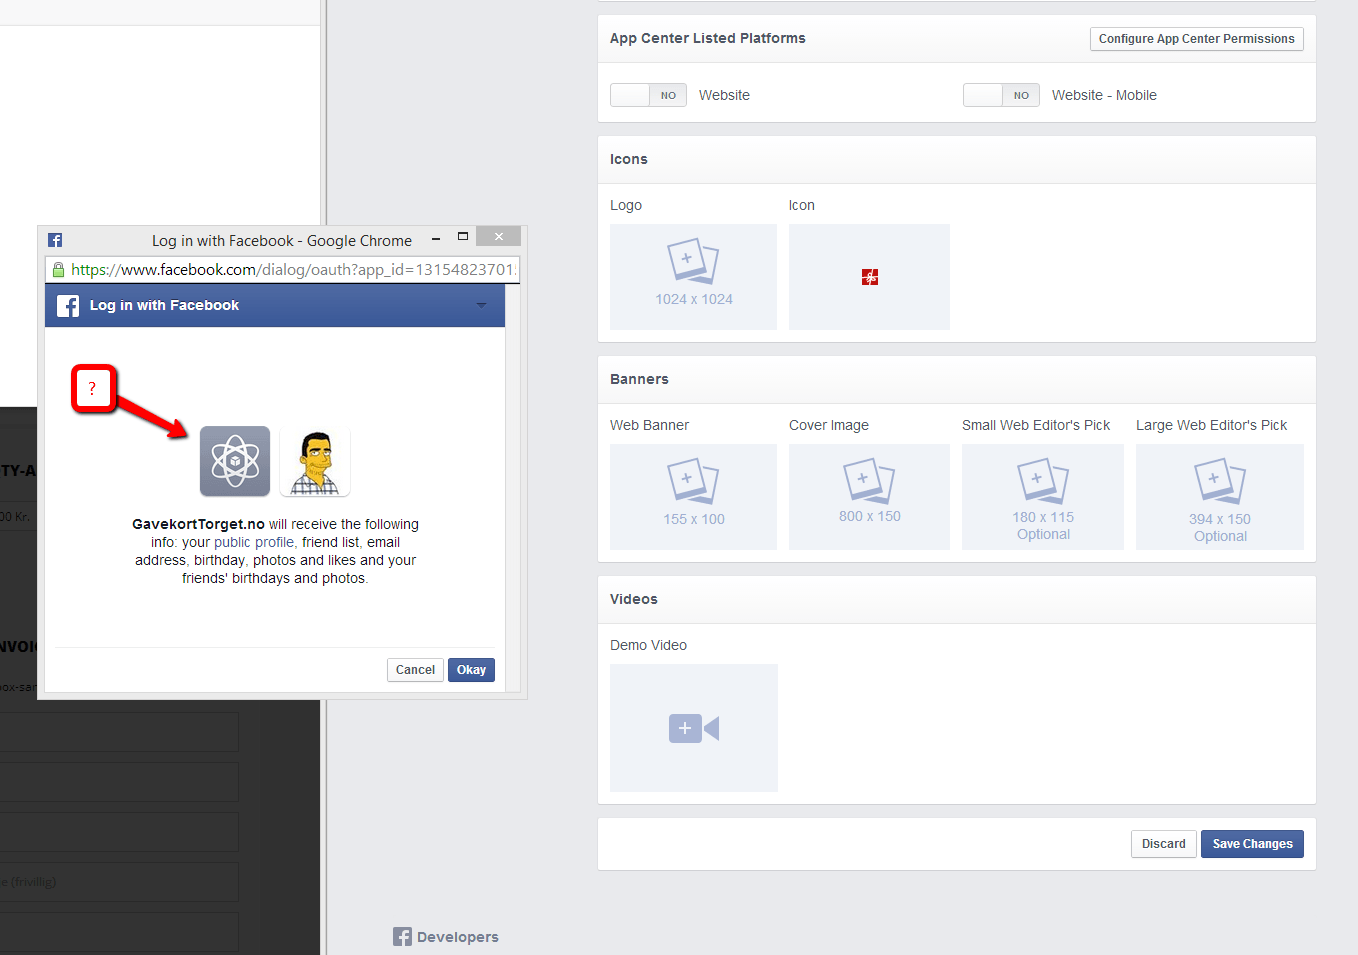 Facebook App Icon Logo - Facebook App Developer Logo is gone? - Web Applications Stack Exchange